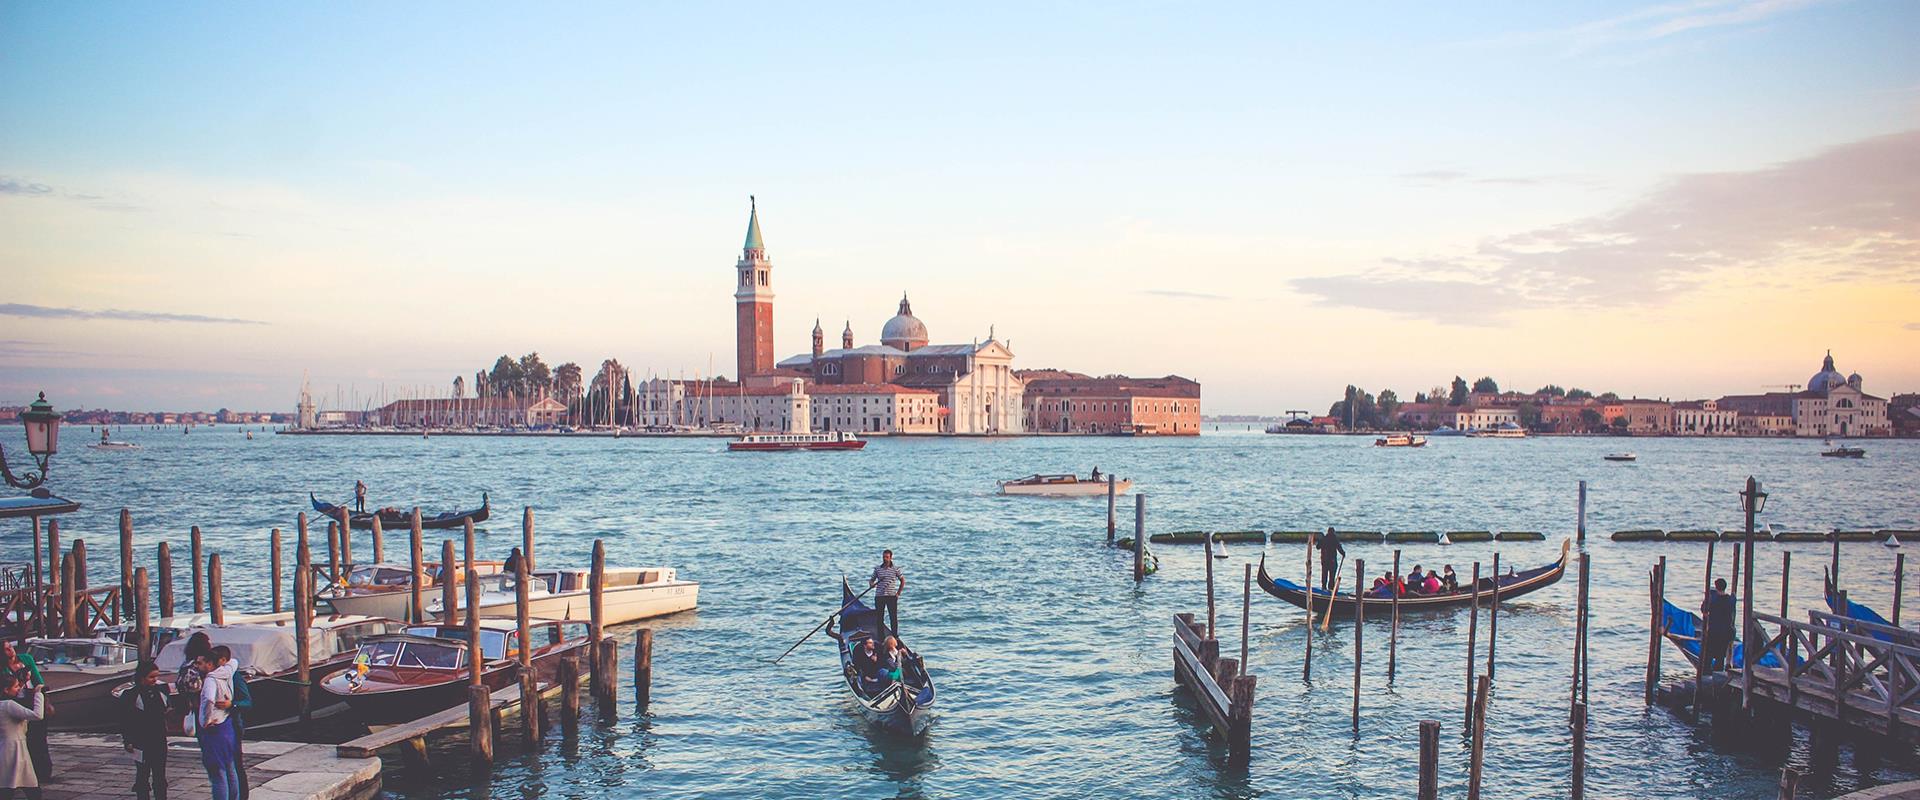 Scopri il fascino di Venezia: Hotel Turismo è un punto di partenza ideale per raggiungere anche questa città unica al mondo. Prenota subito e scopri le nostre offerte!